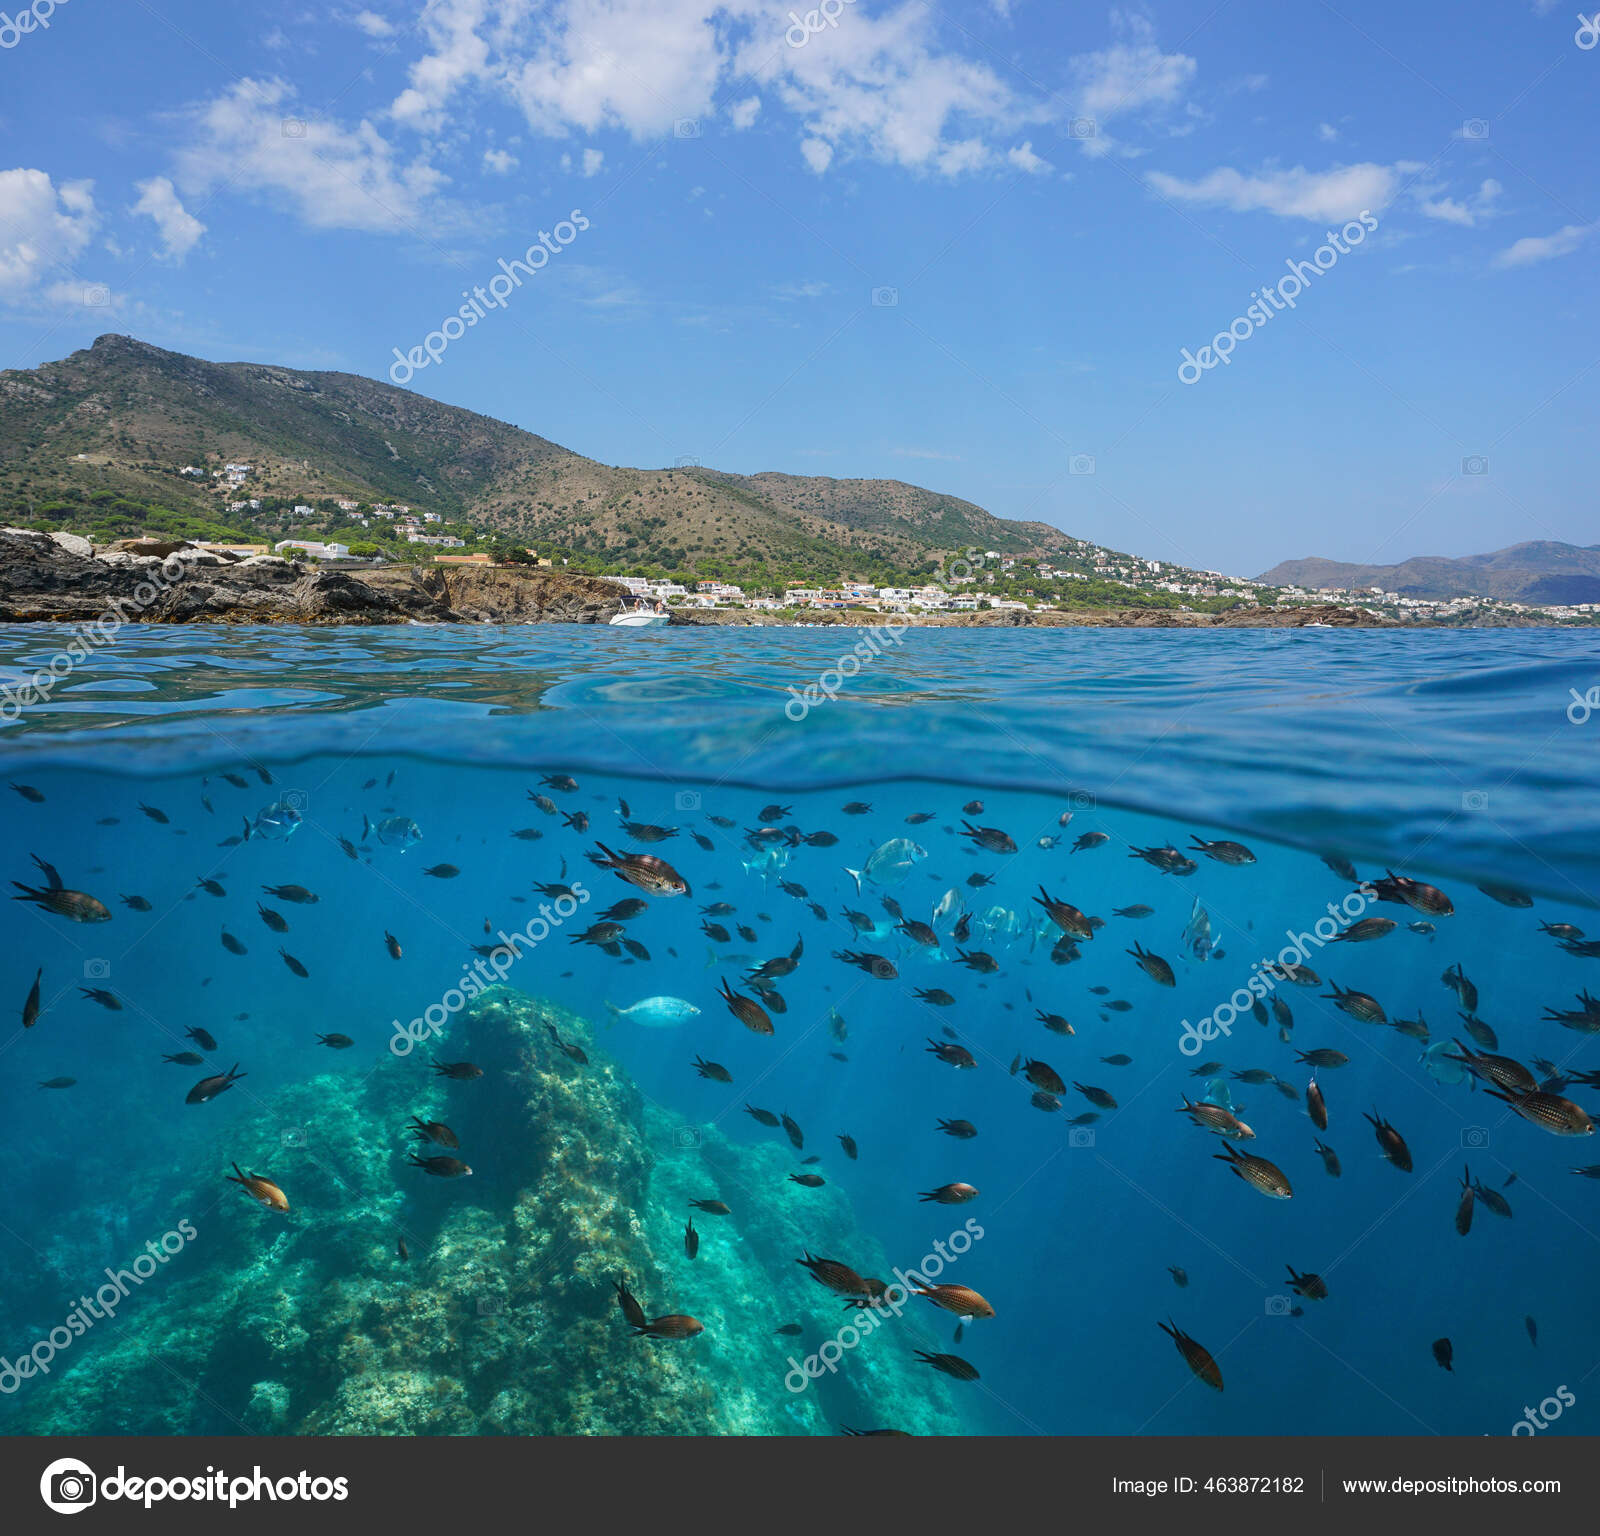 Mediterranean sea split view seagrass underwater Stock Photo by